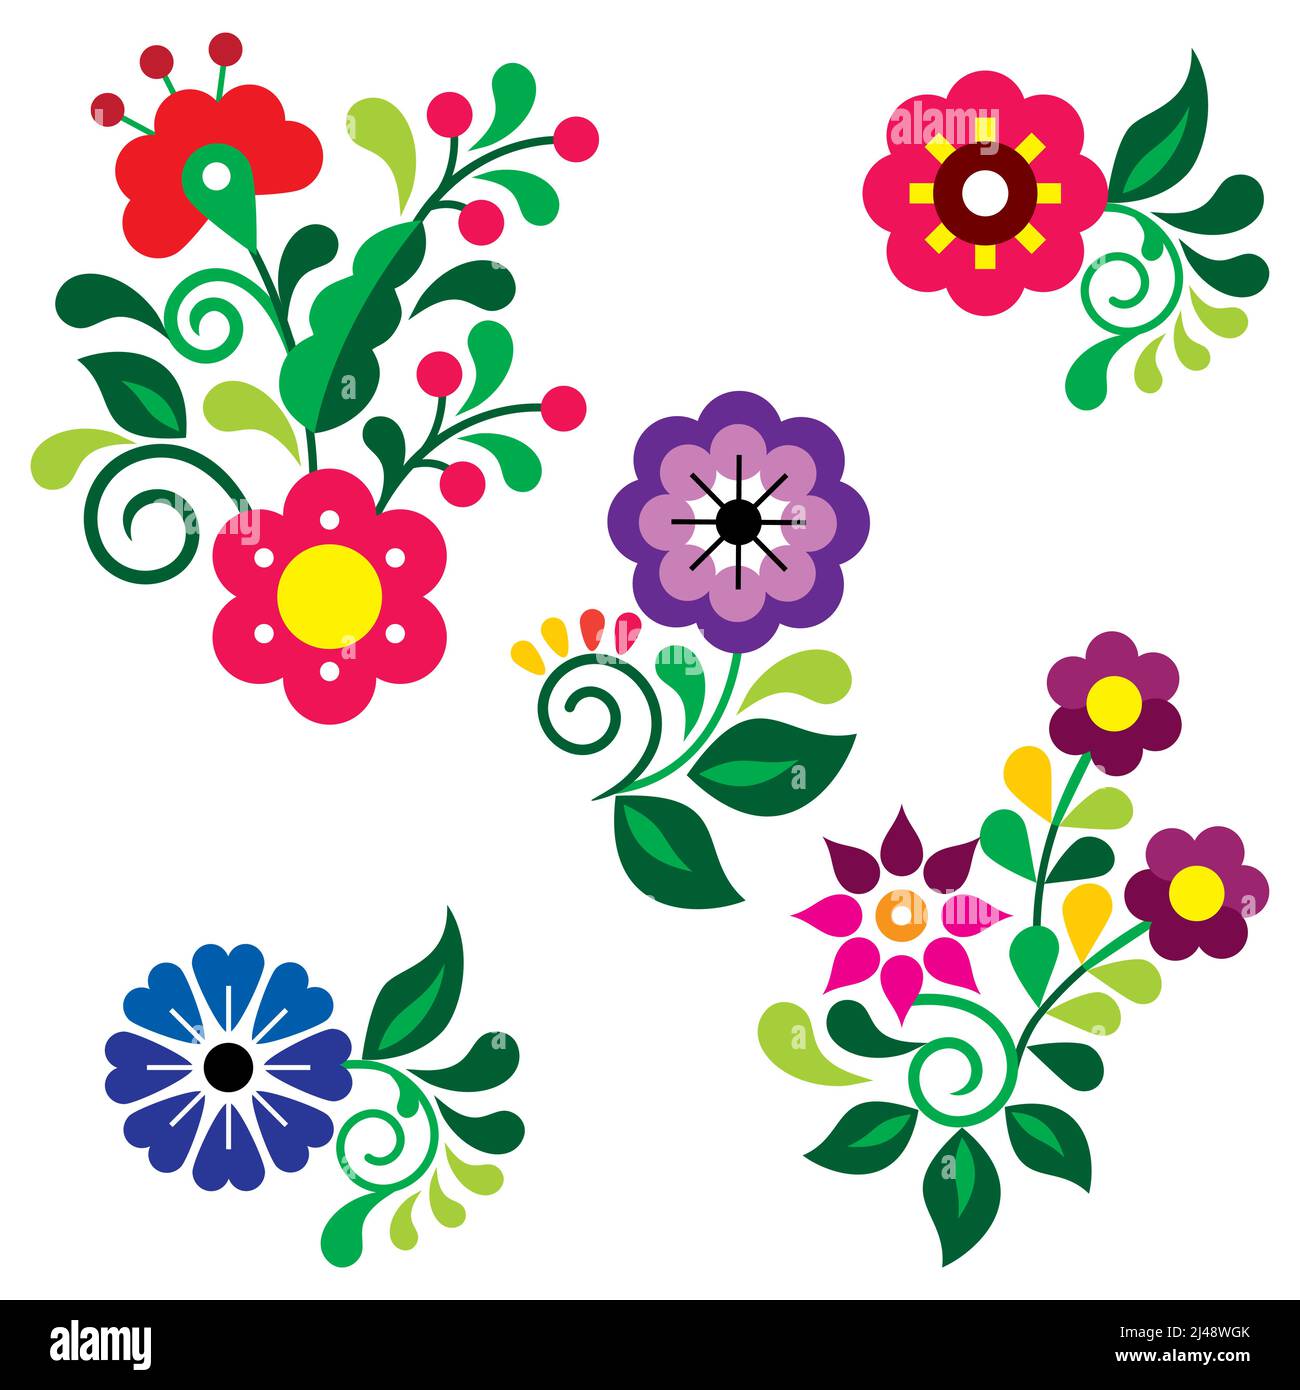 Elementi di design vettoriali in stile arte folk floreale perfetti per biglietti d'auguri su invito, ispirati ai tradizionali ricami messicani Illustrazione Vettoriale